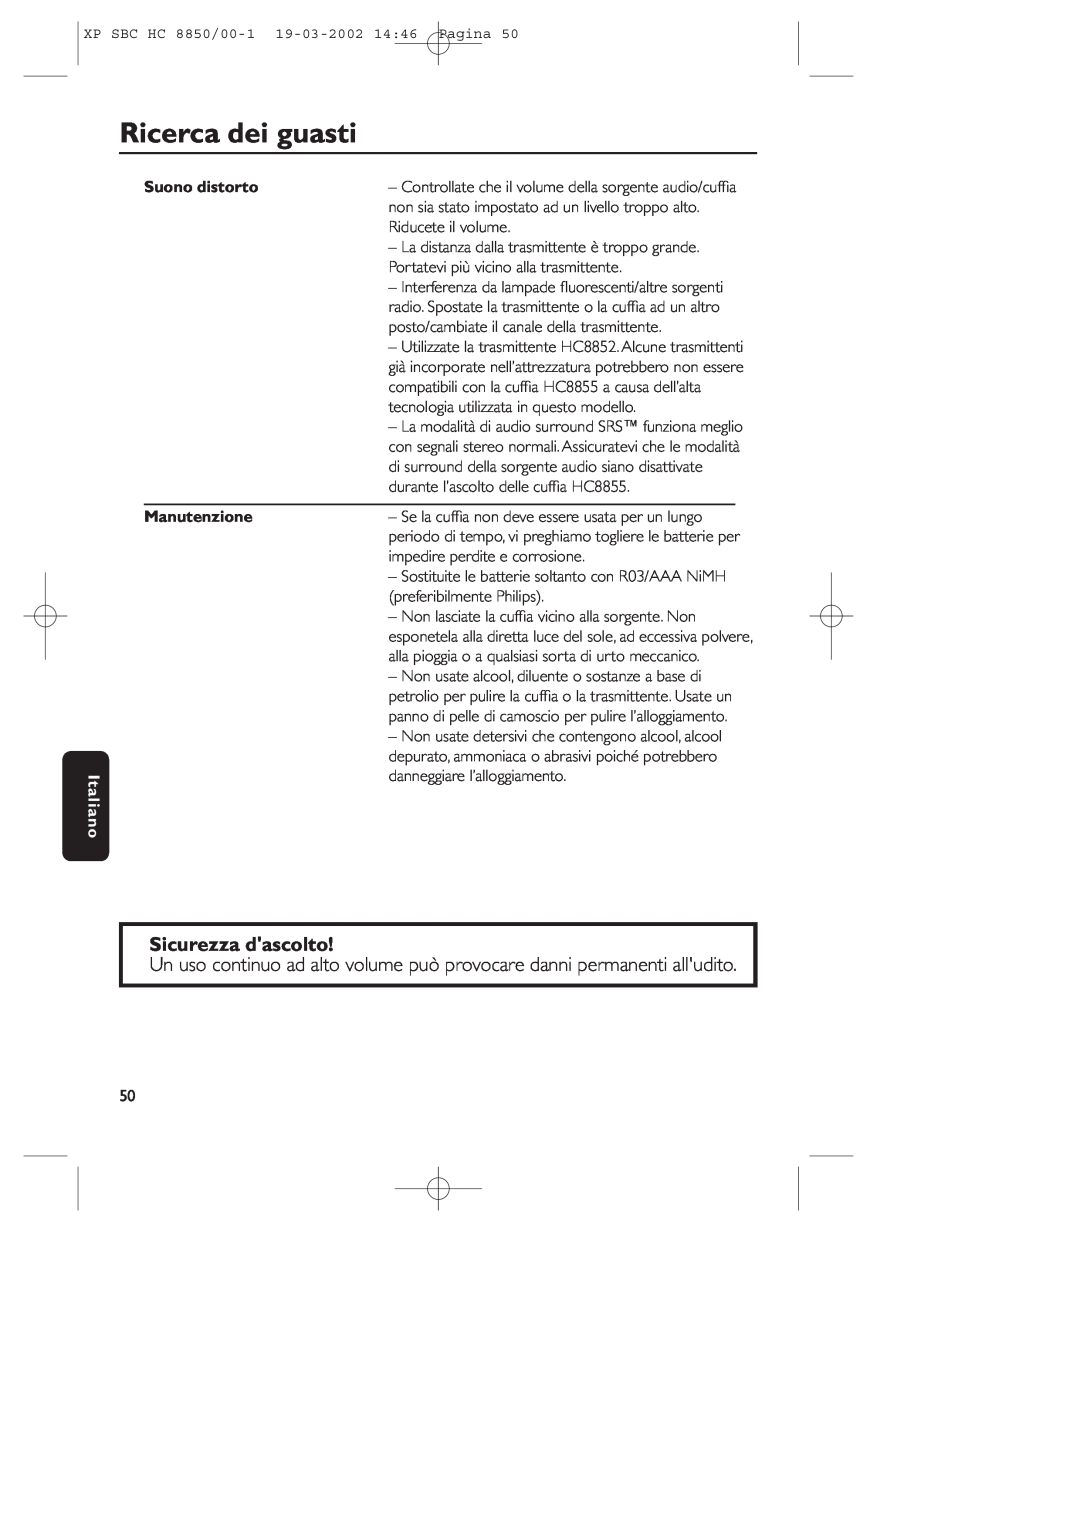 Philips HC8850 manual Ricerca dei guasti, Sicurezza dascolto, Italiano, Suono distorto, Manutenzione 